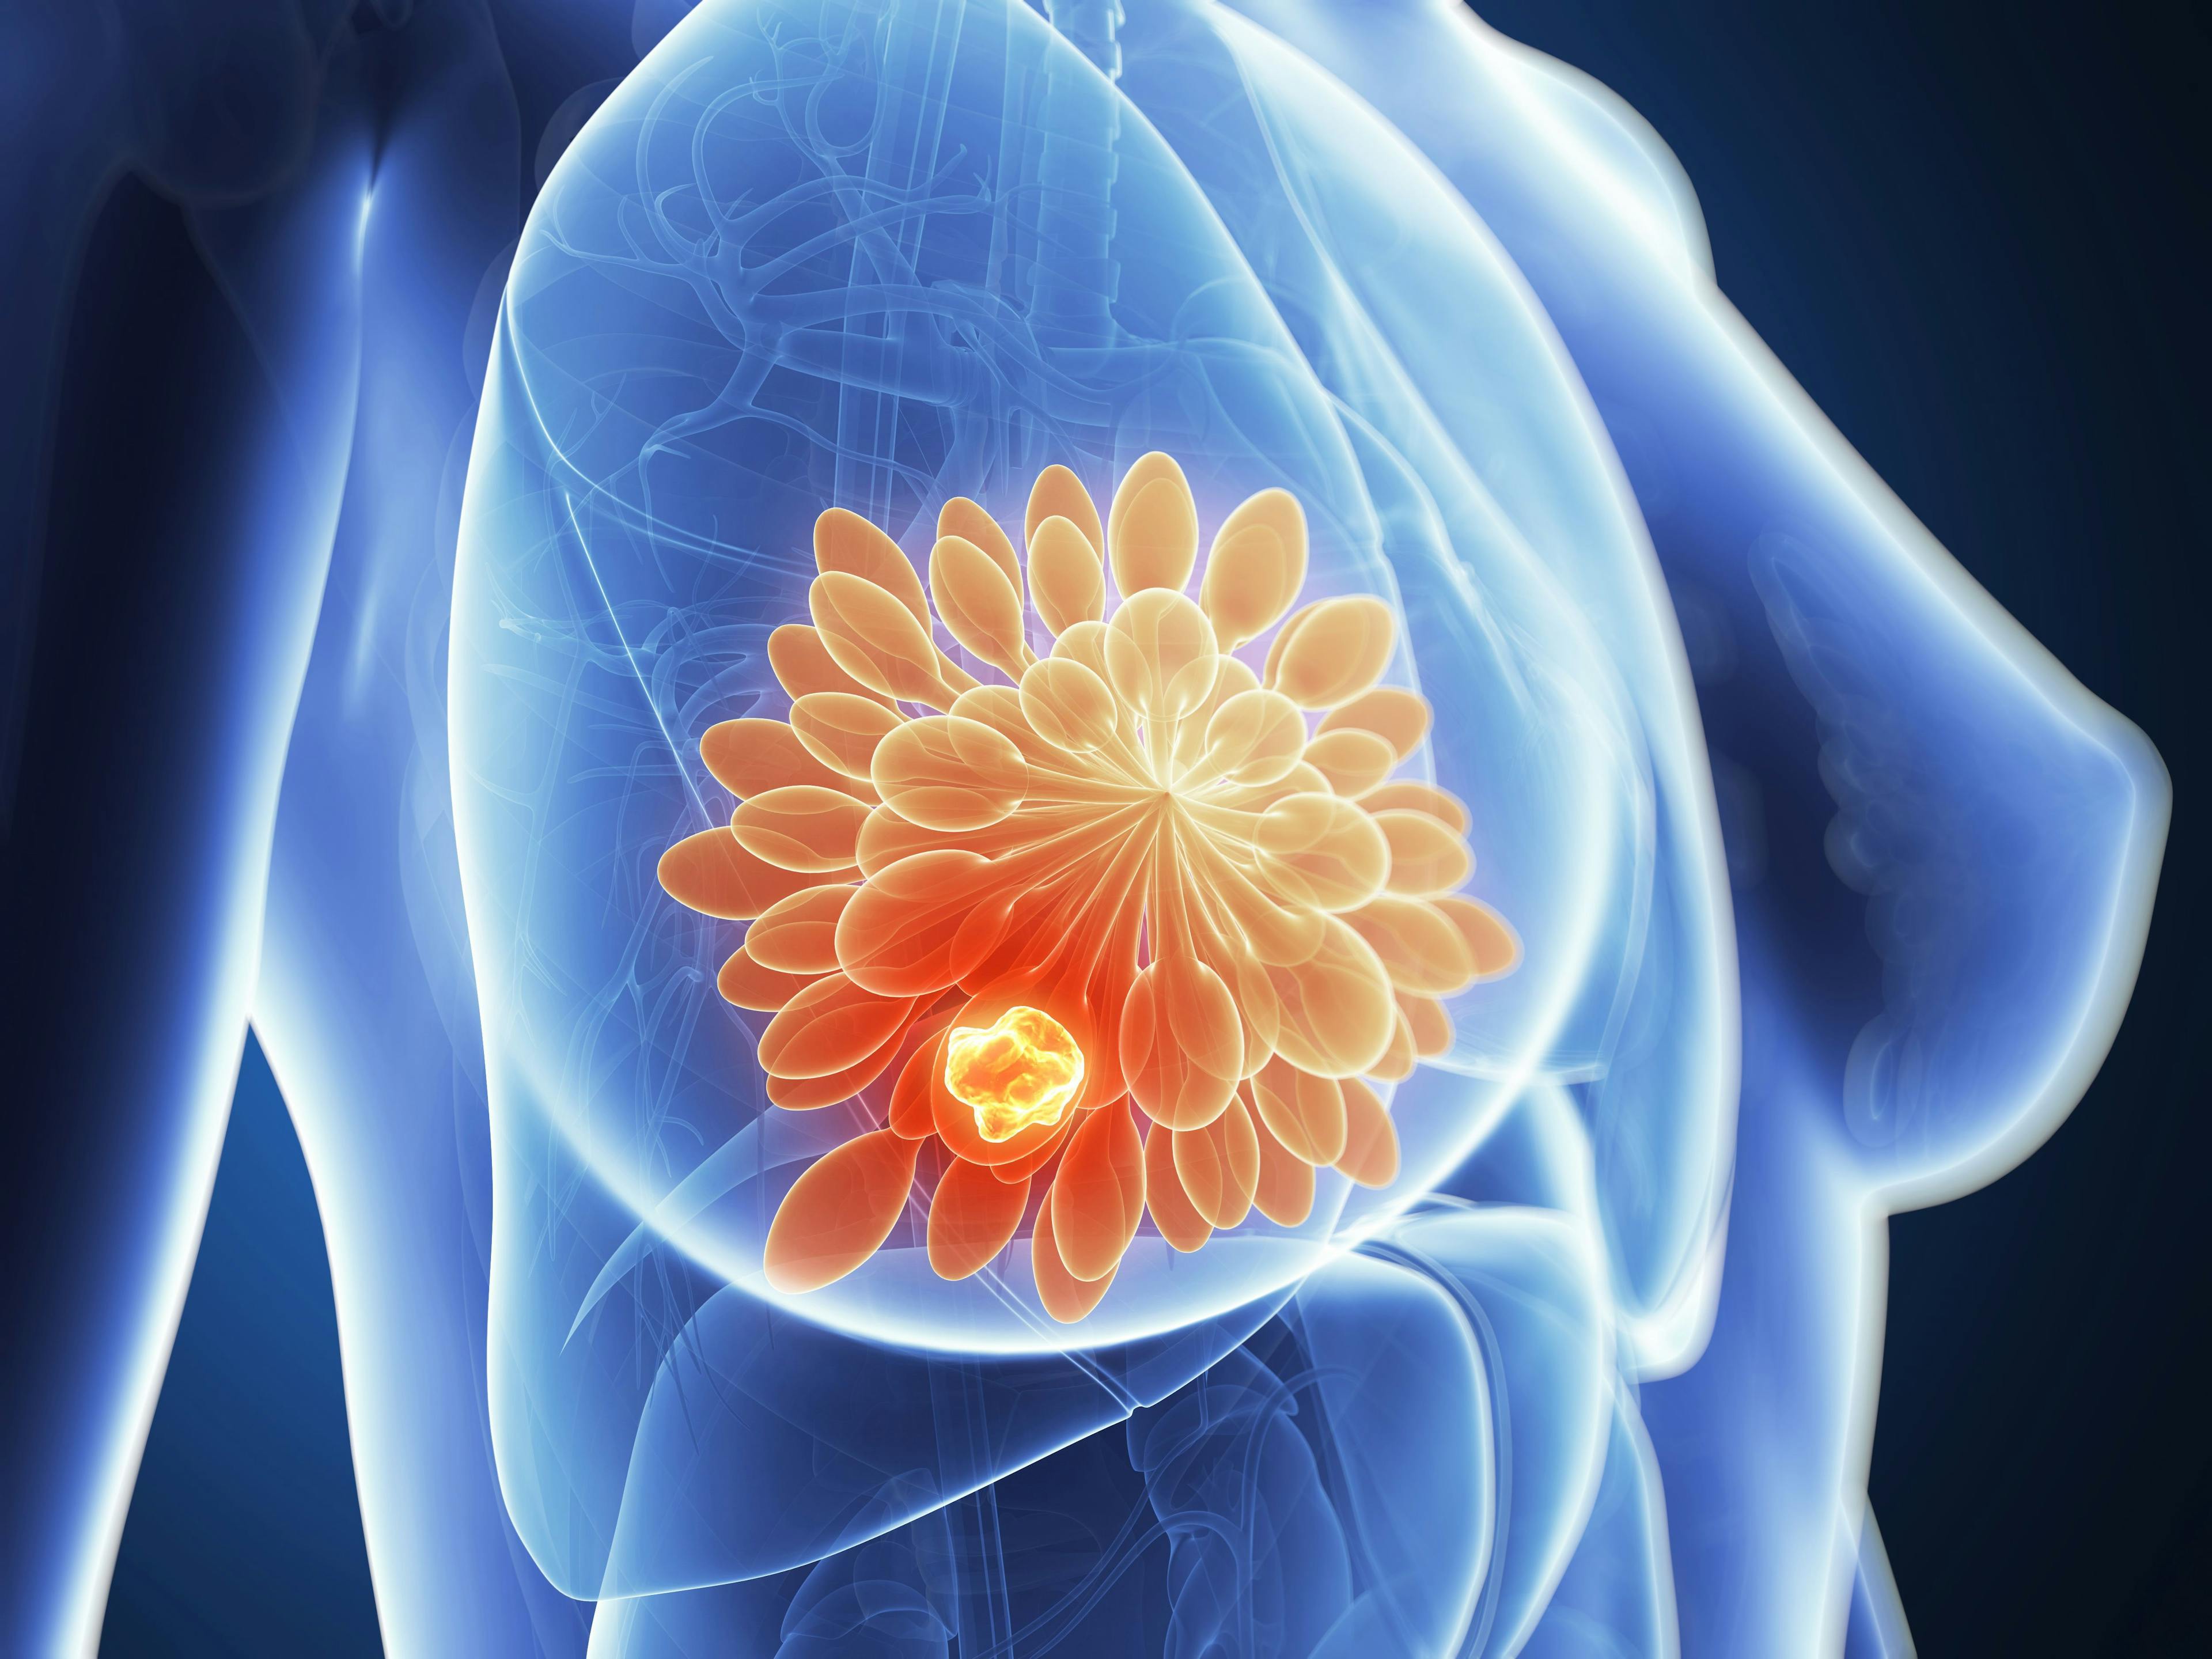 3-D illustration of breast cancer | Image credit: SciePro - stock.adobe.com